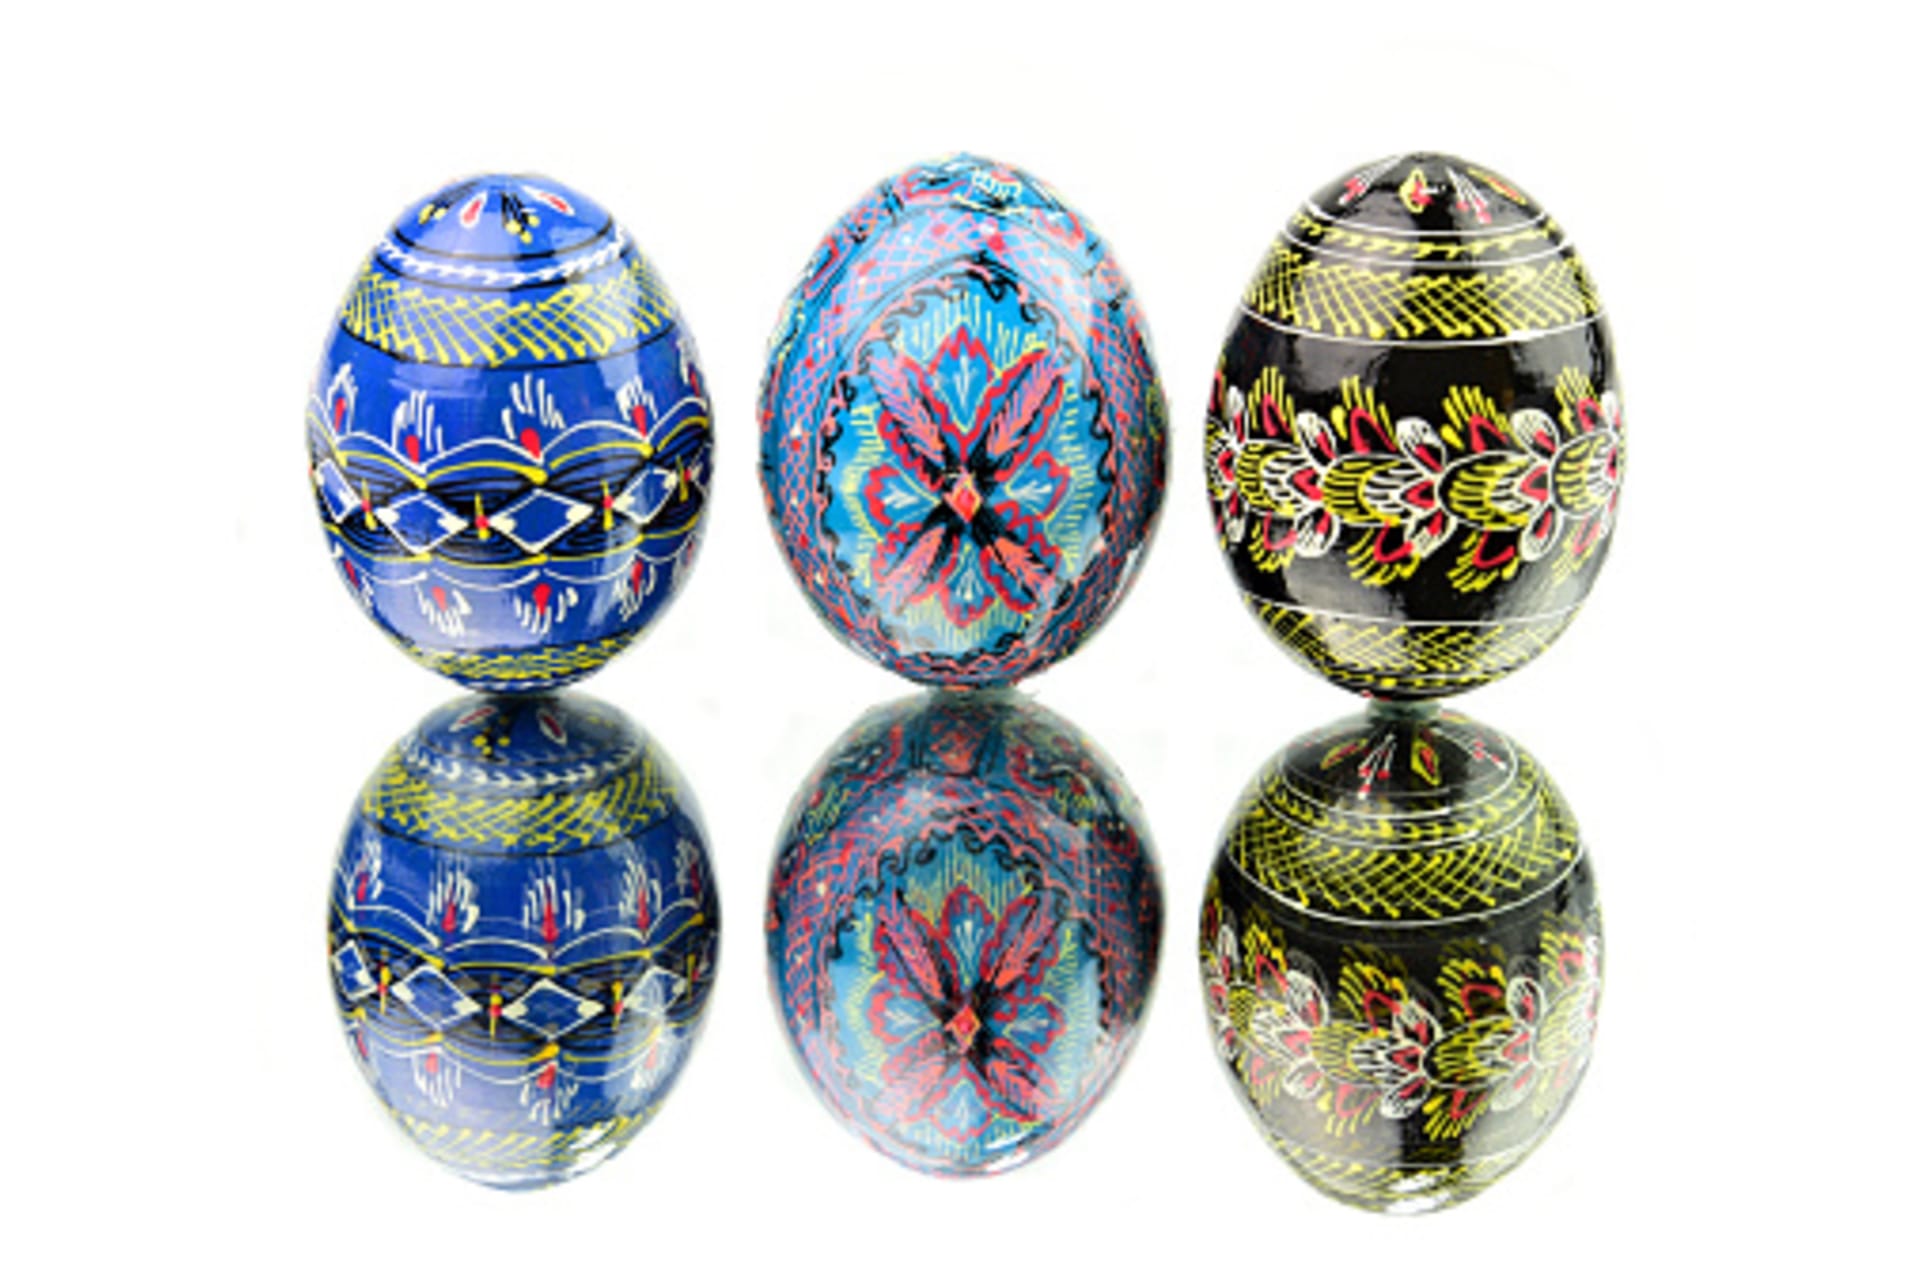 Tradiční ukrajinské kraslice zvané pysanky se vyskytují zejména na západě země